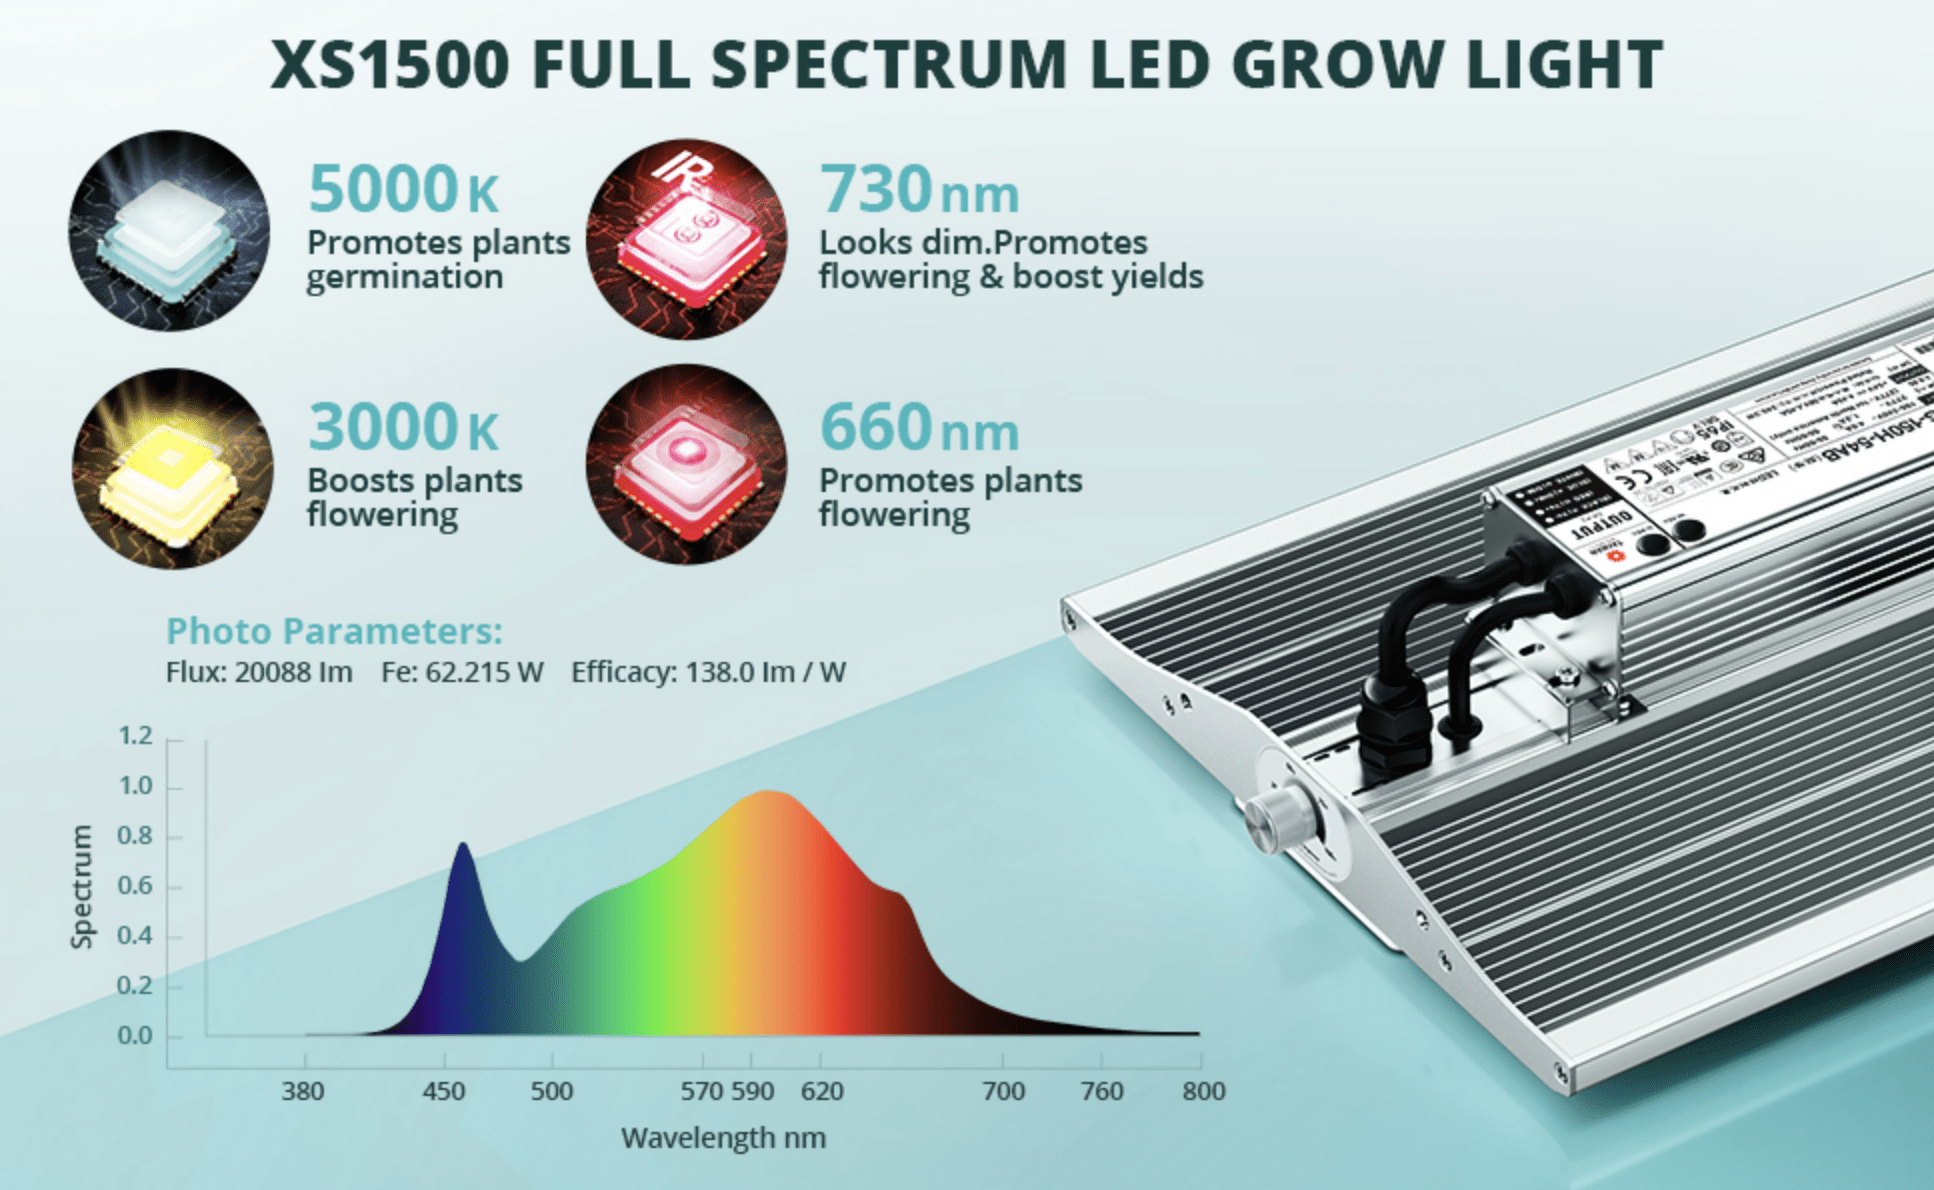 VIPARSPECTRA XS1500 Full Spectrum LED Grow Light